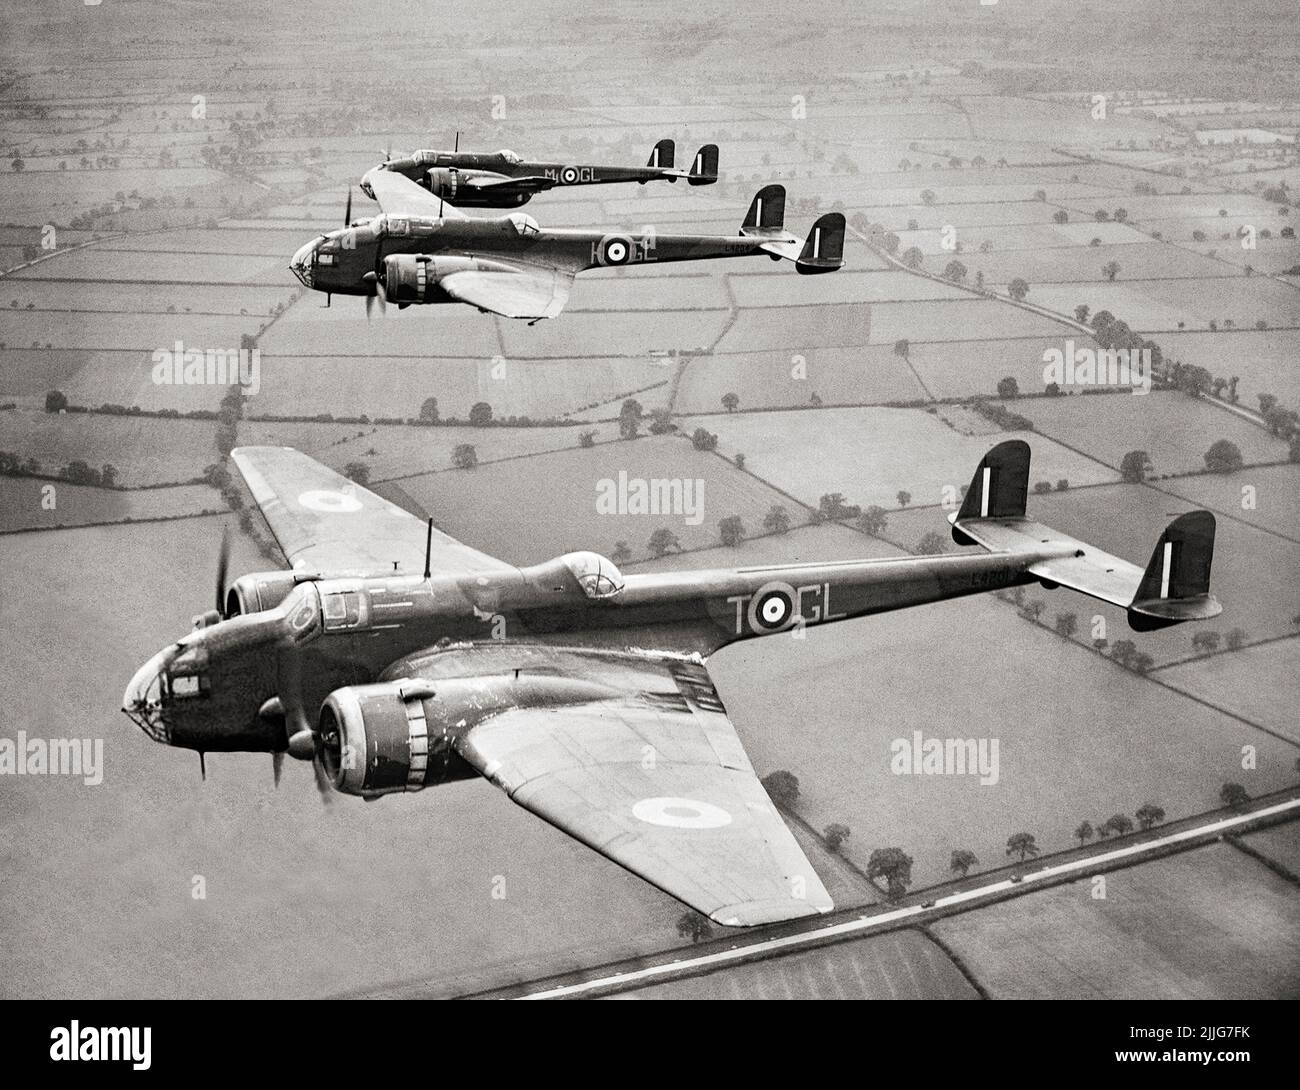 Handley Page Hampdens de la Unidad de Formación Operacional (OTU) nº 14, con sede en Cottesmore, 23 de julio de 1940. Un bombardero medio bimotor británico fue operado por la Real Fuerza Aérea como parte del trío de grandes bombarderos bimotor adquiridos para la RAF, uniéndose a los Armstrong Whitworth Whitley y Vickers Wellington. Sirvió en las primeras etapas de la Segunda Guerra Mundial, soportando la peor parte de la temprana guerra de bombardeos sobre Europa, tomando parte en la primera incursión nocturna en Berlín y la primera incursión de 1.000 bombarderos en Colonia. Más tarde reemplazado por bombarderos pesados como el Avro Lancaster Foto de stock